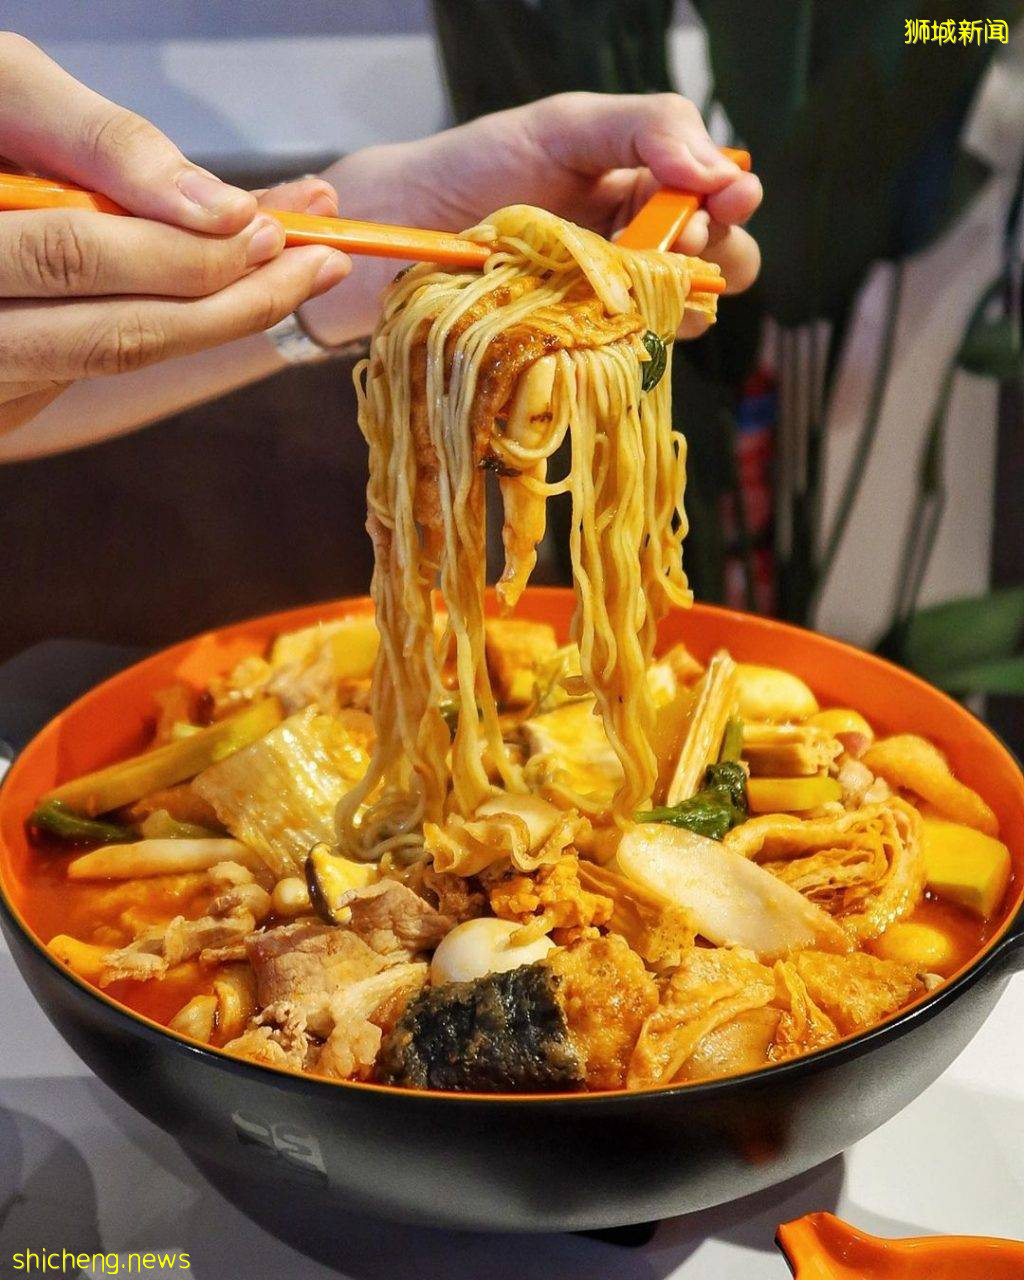 任性开吃✨盘点新加坡8家麻辣烫🍜汤底鲜香、荤素食材随便选！够麻够辣才过瘾😏 